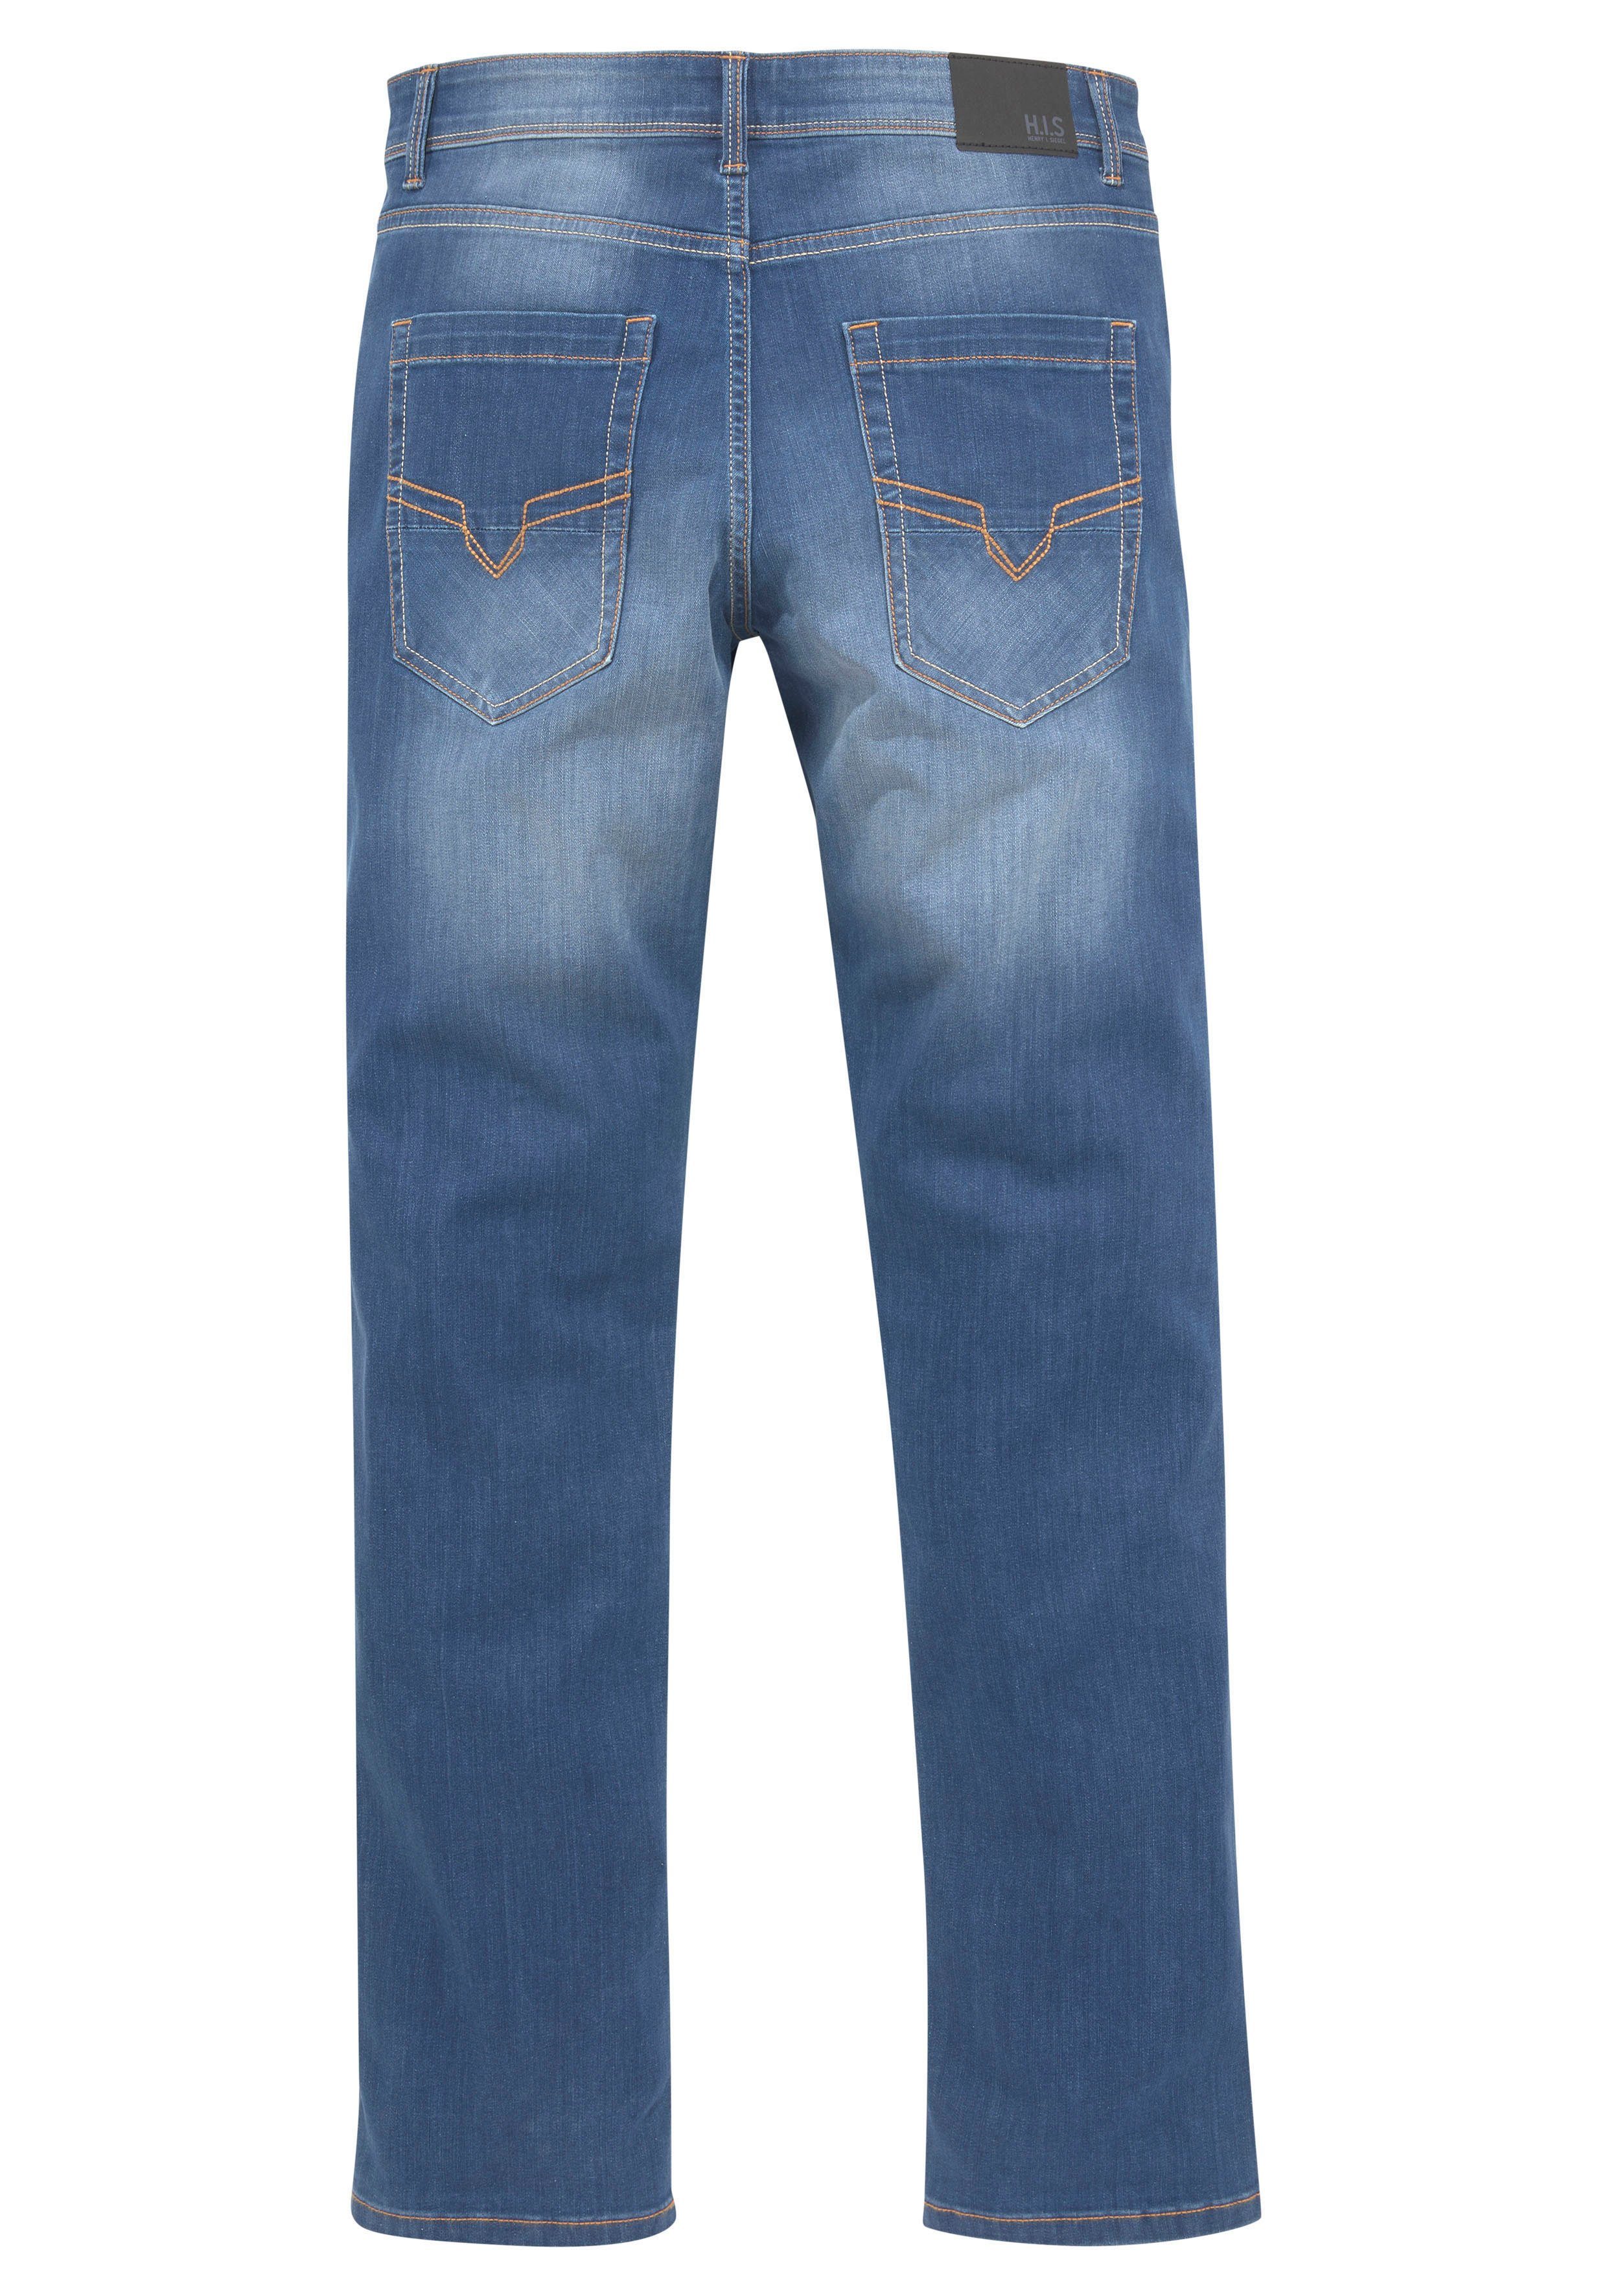 ANTIN blue Comfort-fit-Jeans mid Produktion Ozon Wash durch H.I.S wassersparende Ökologische,